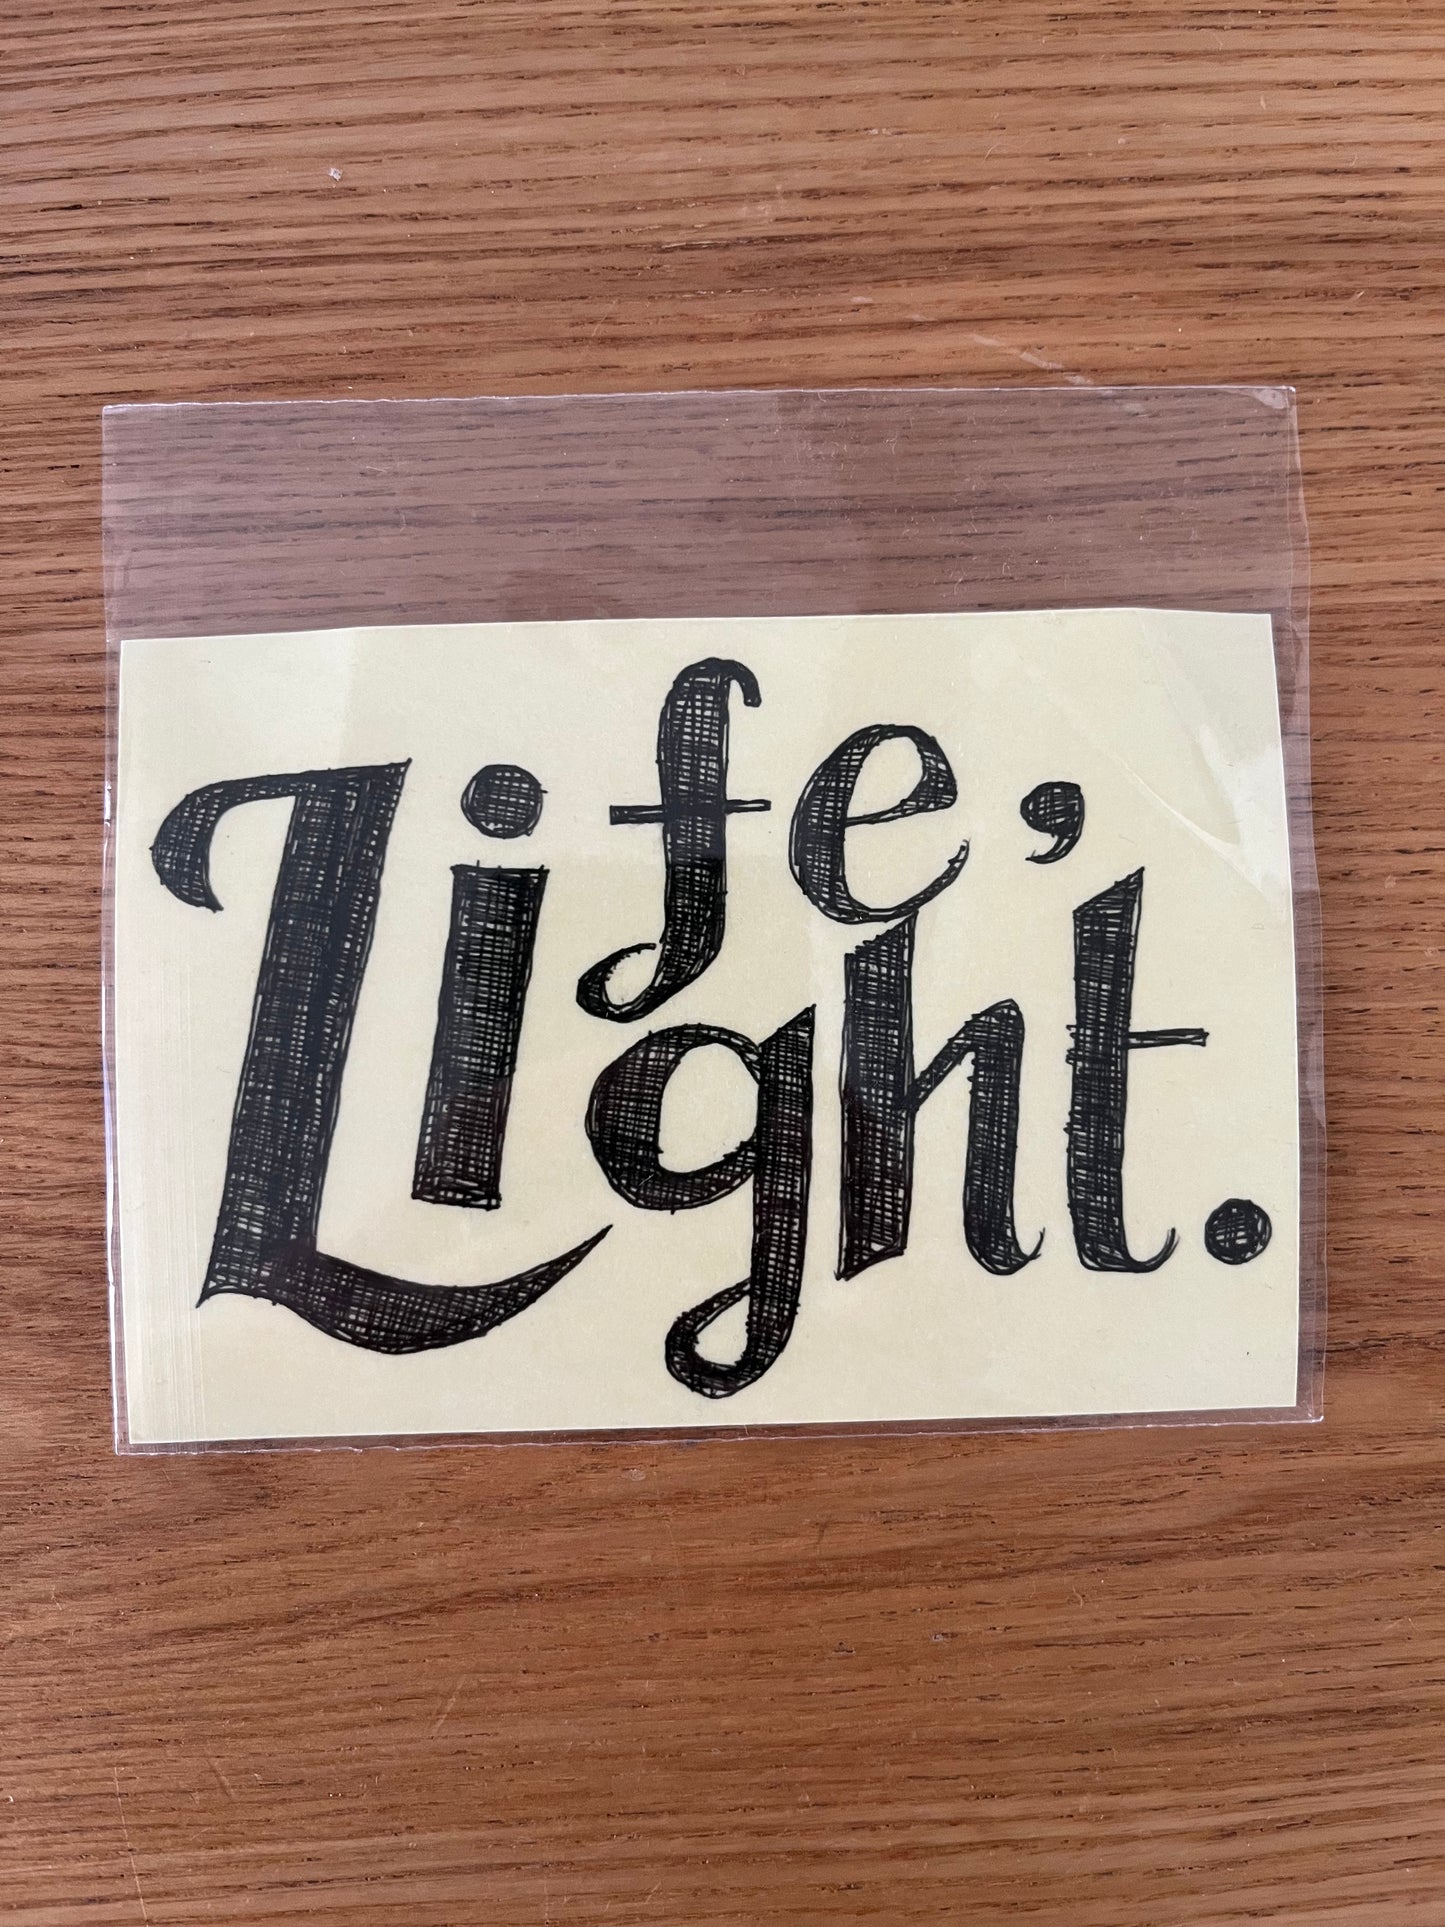 透明防水贴纸  Life/Light Sticker  透明防水貼紙 Life/Light